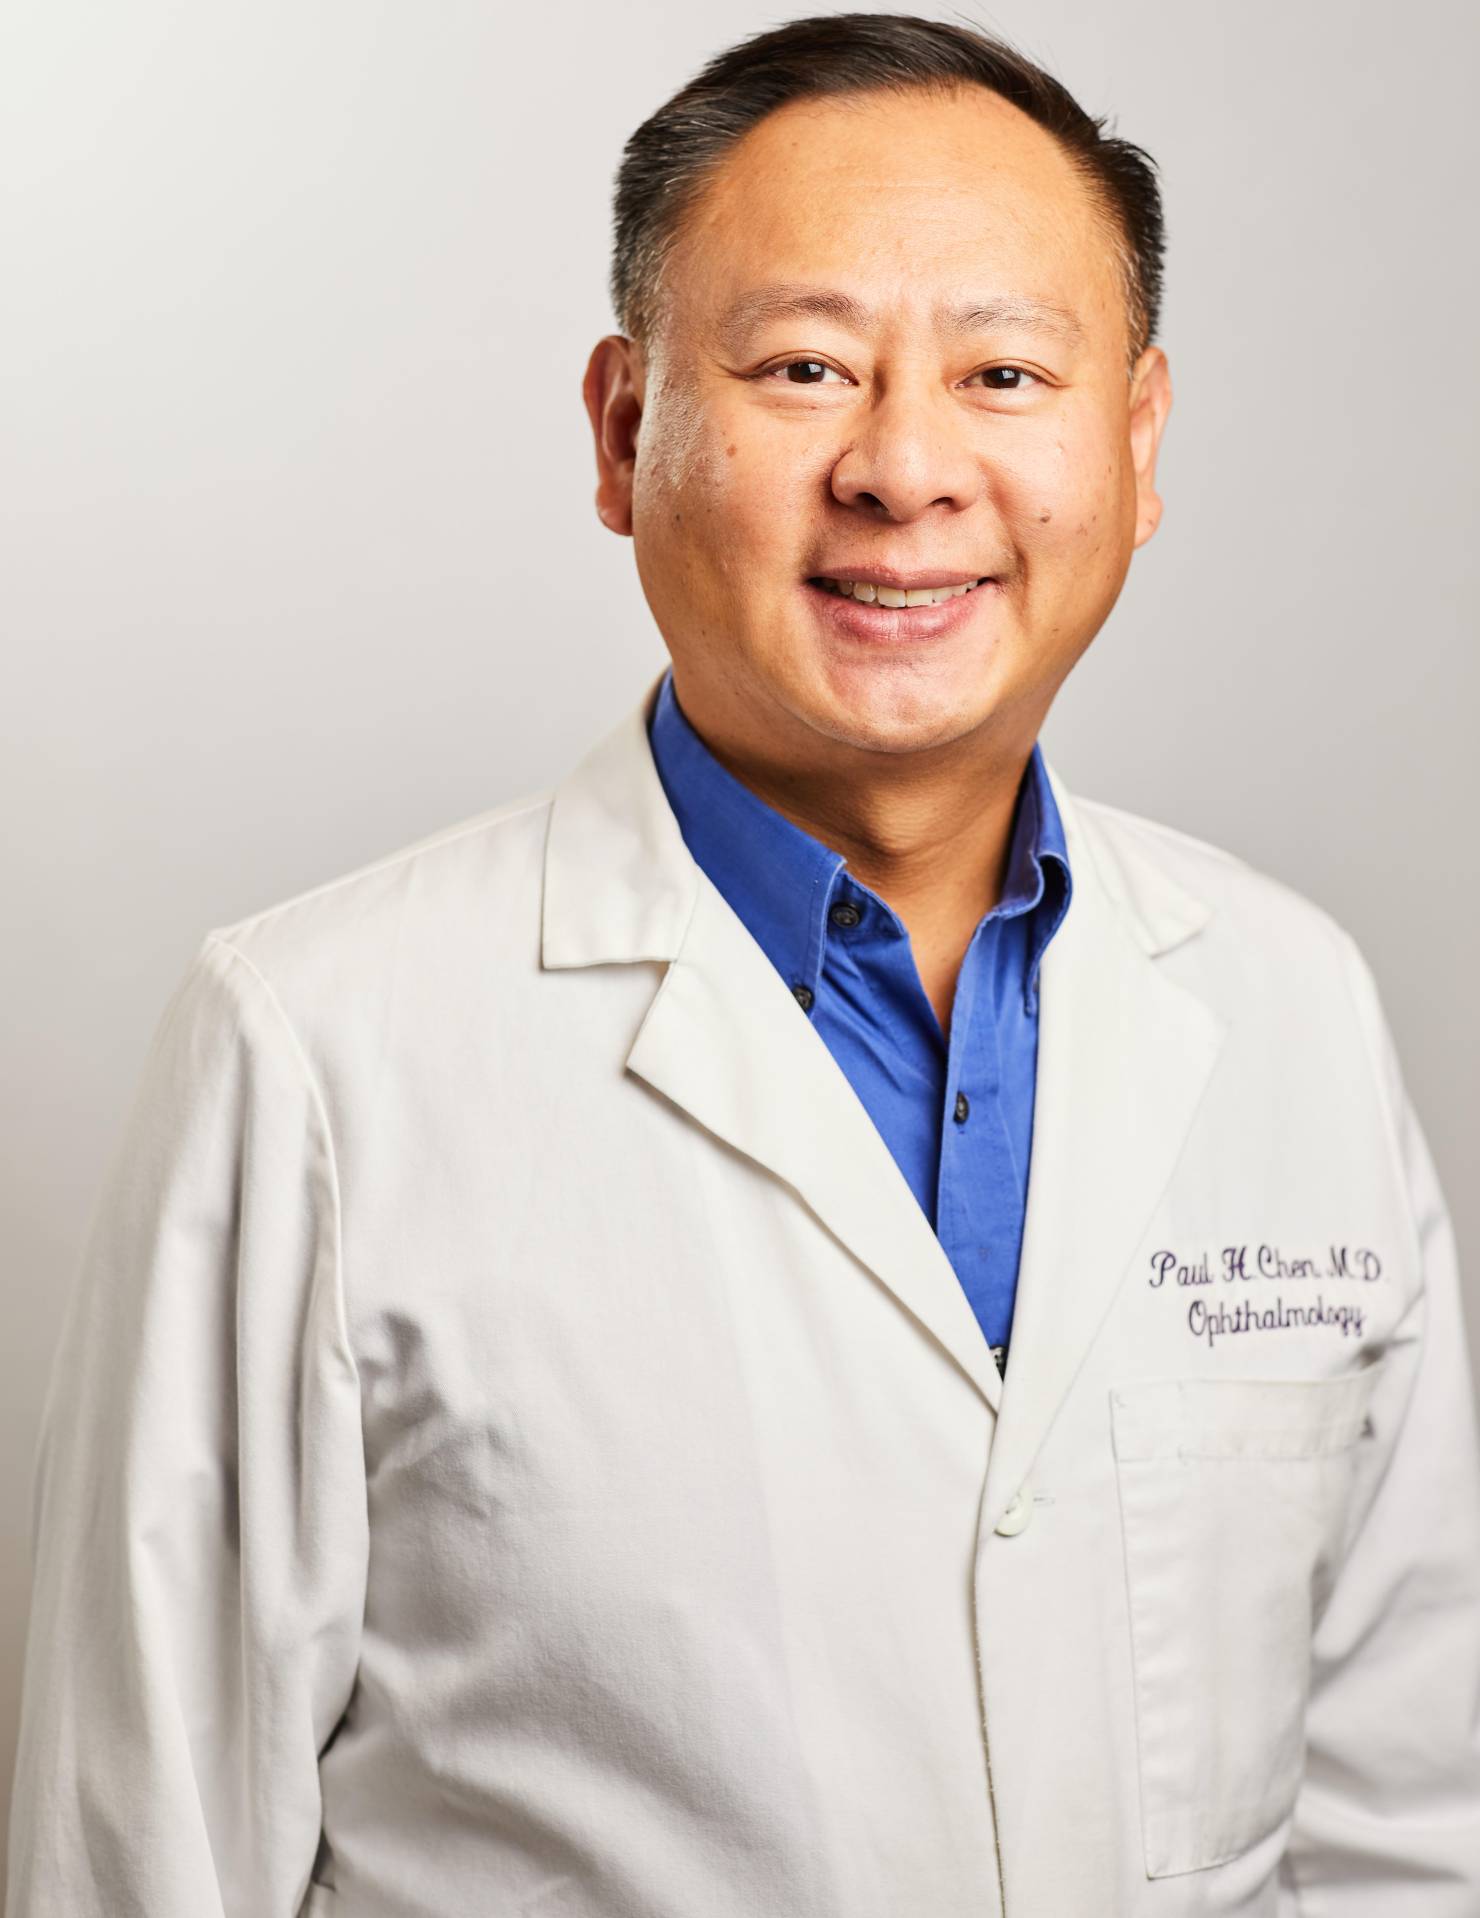 Dr. Paul H. Chen